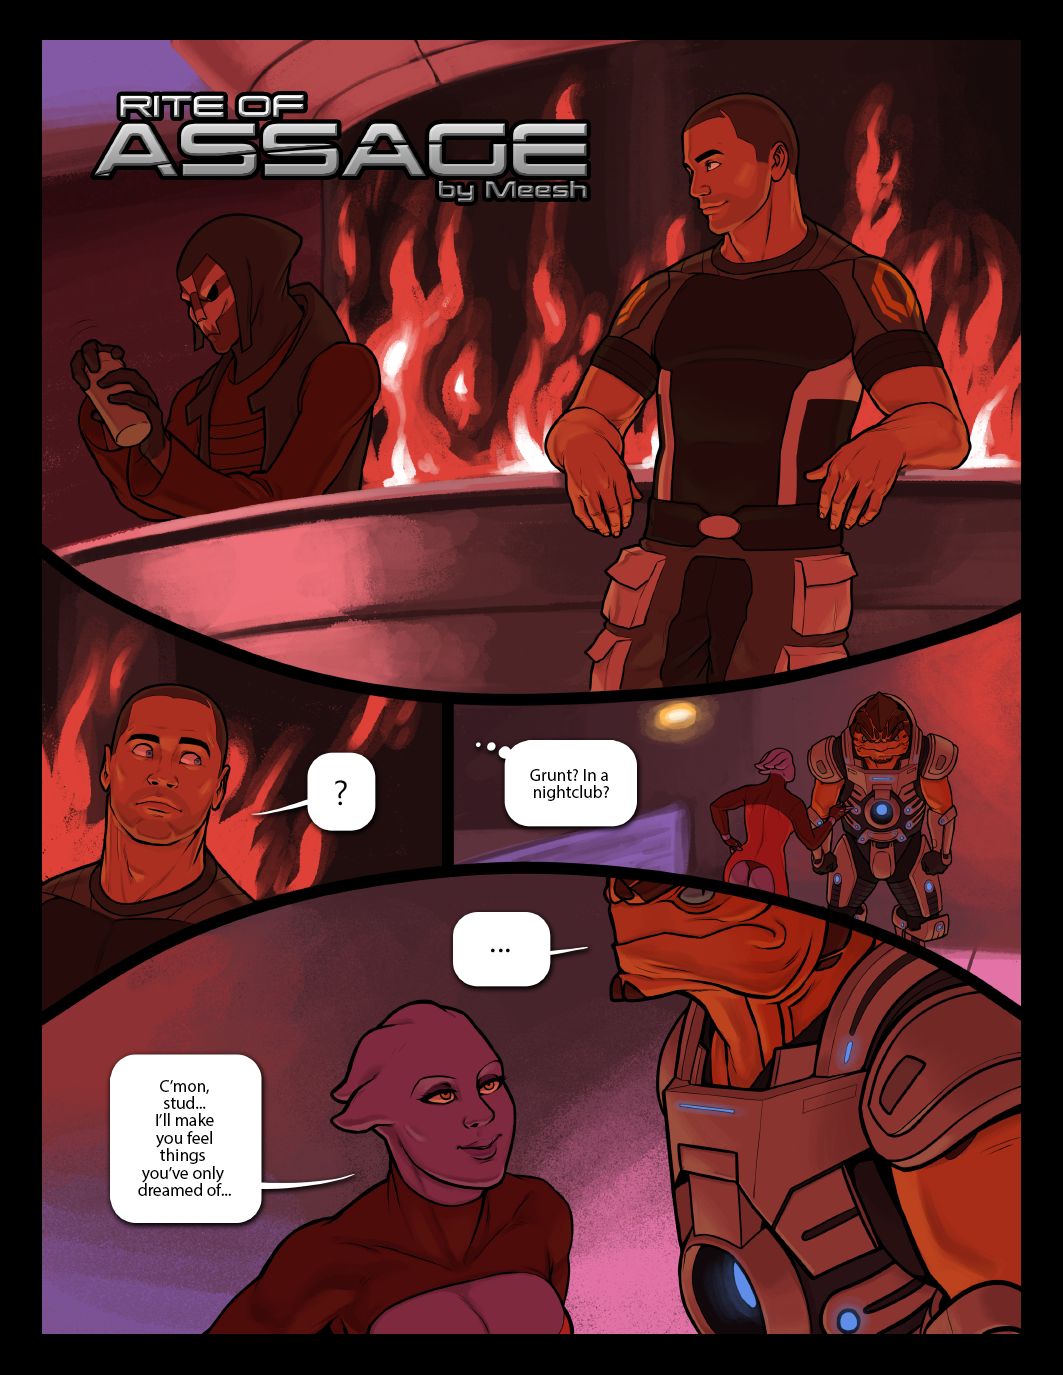 Mass Effect Sex Comics